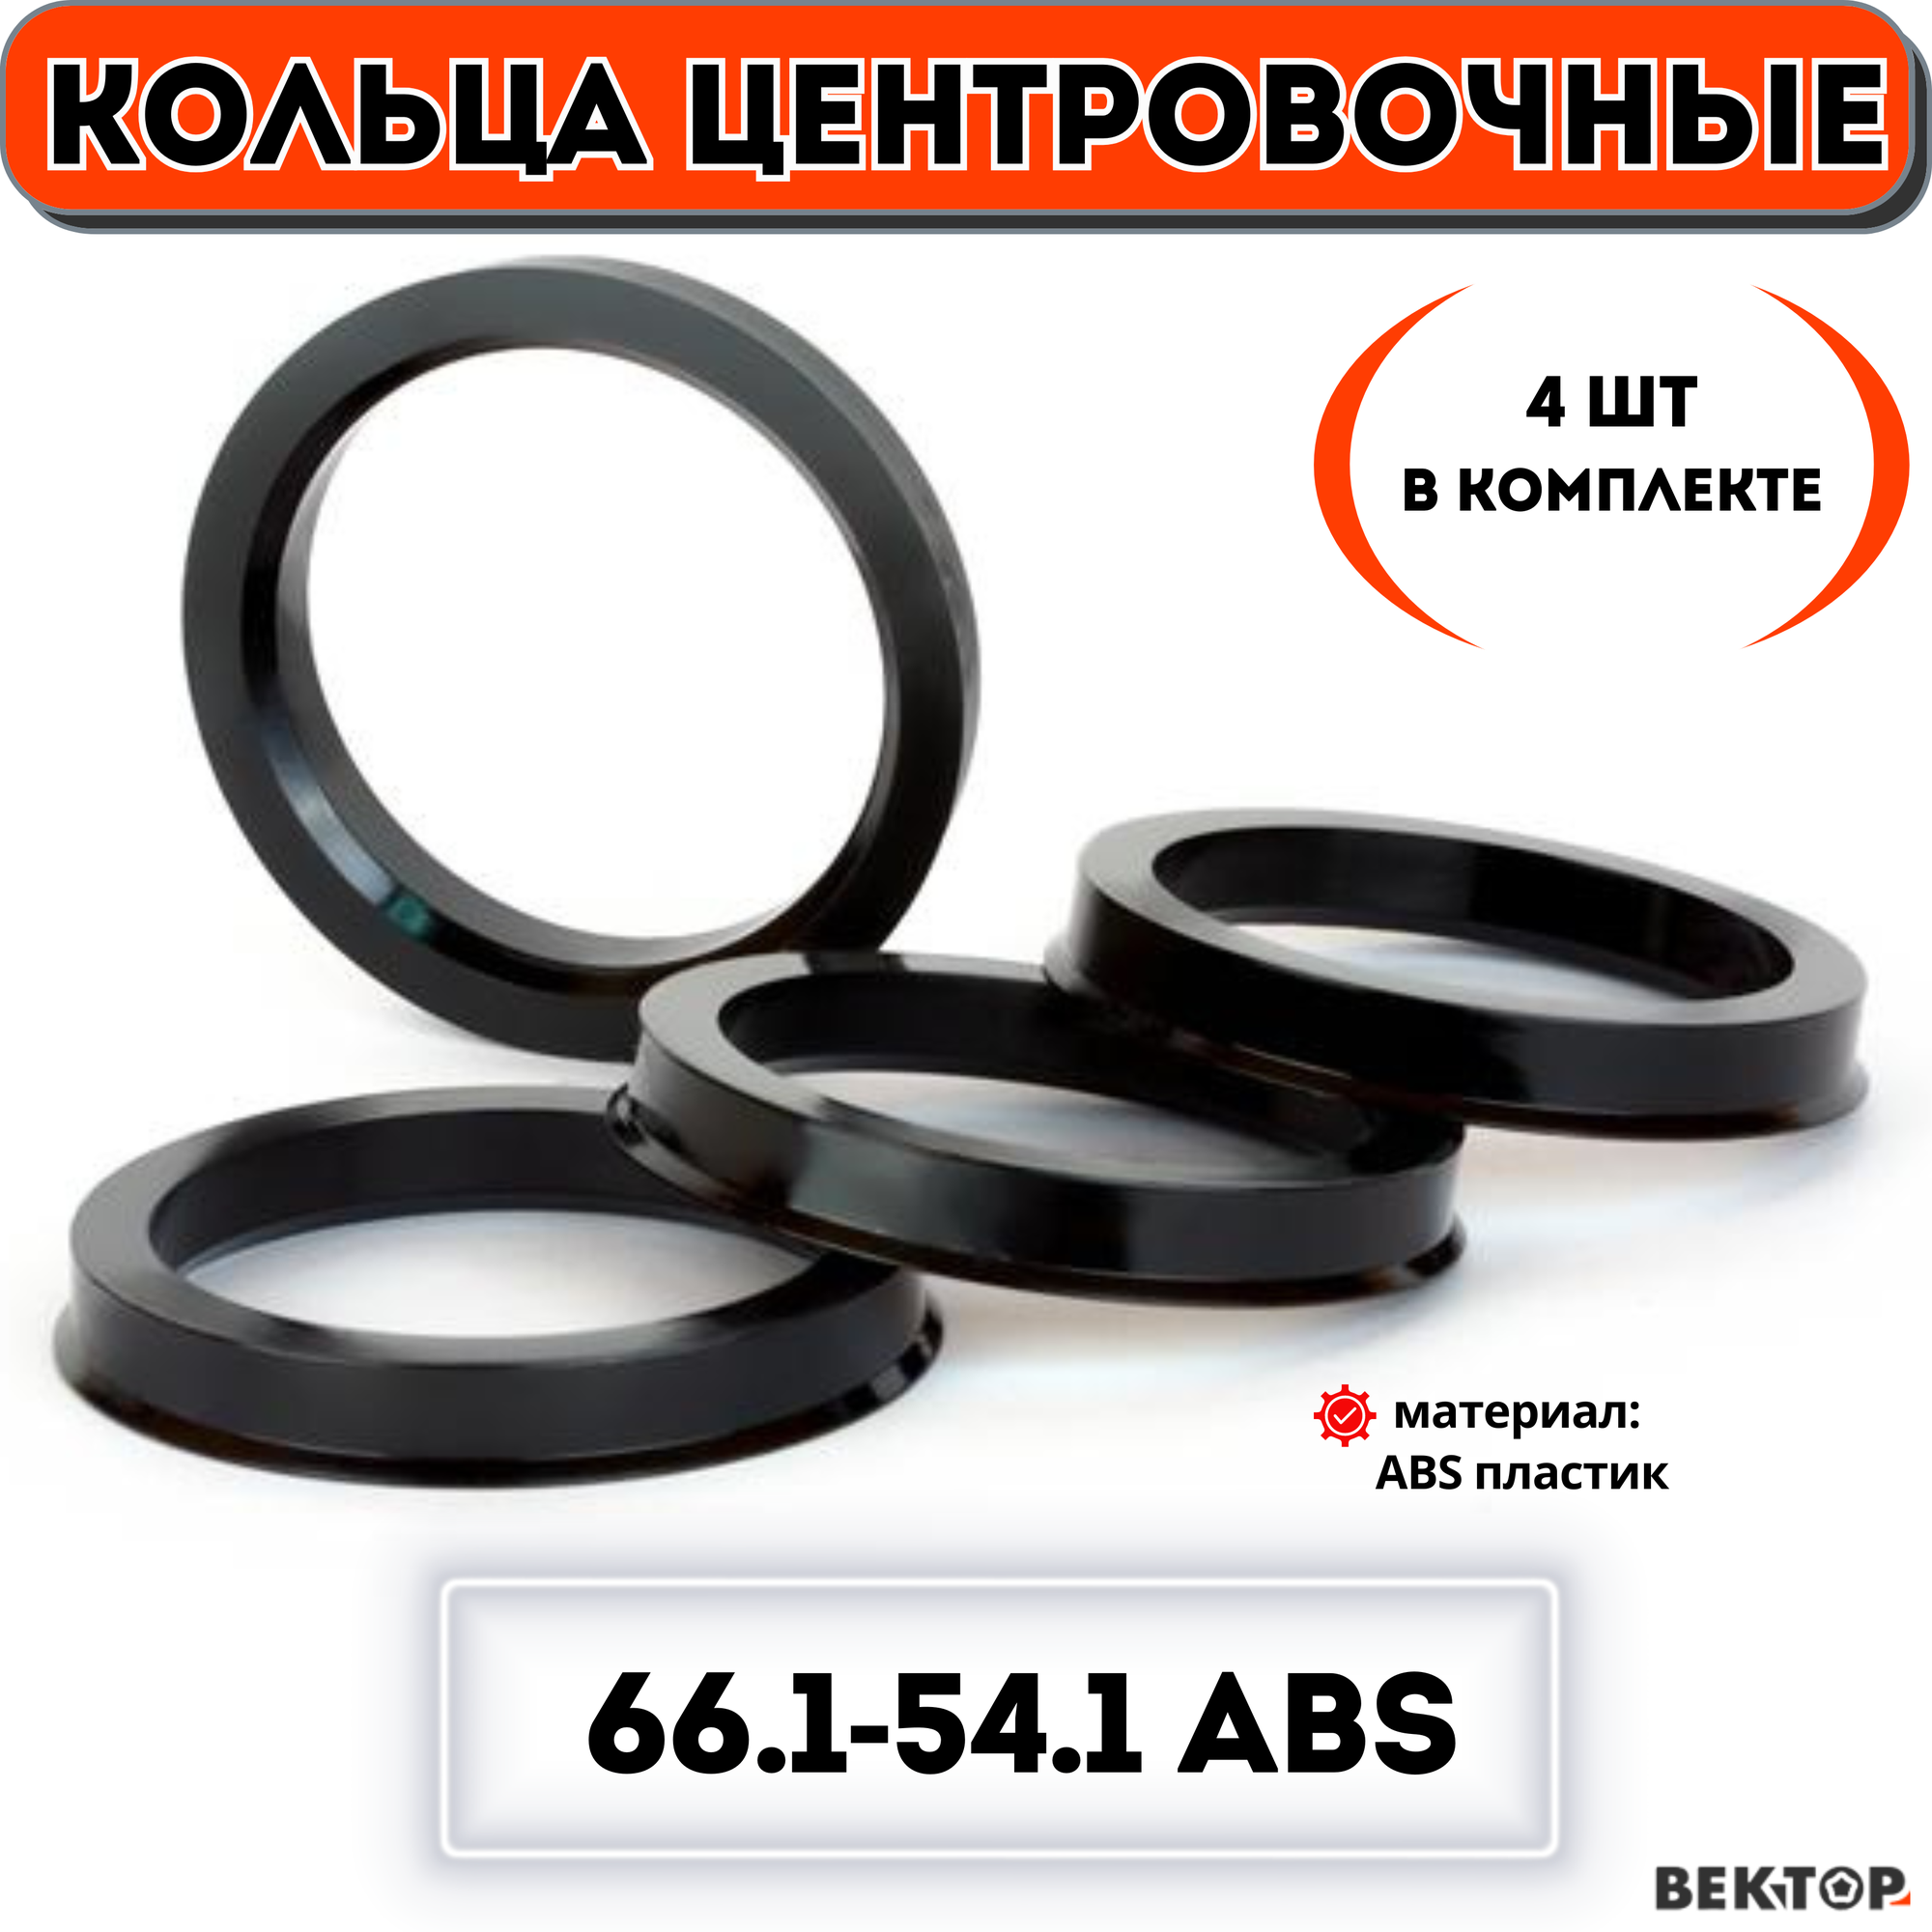 Кольца центровочные для автомобильных дисков 66.1-54,1 ABS (к-т 4 шт.)